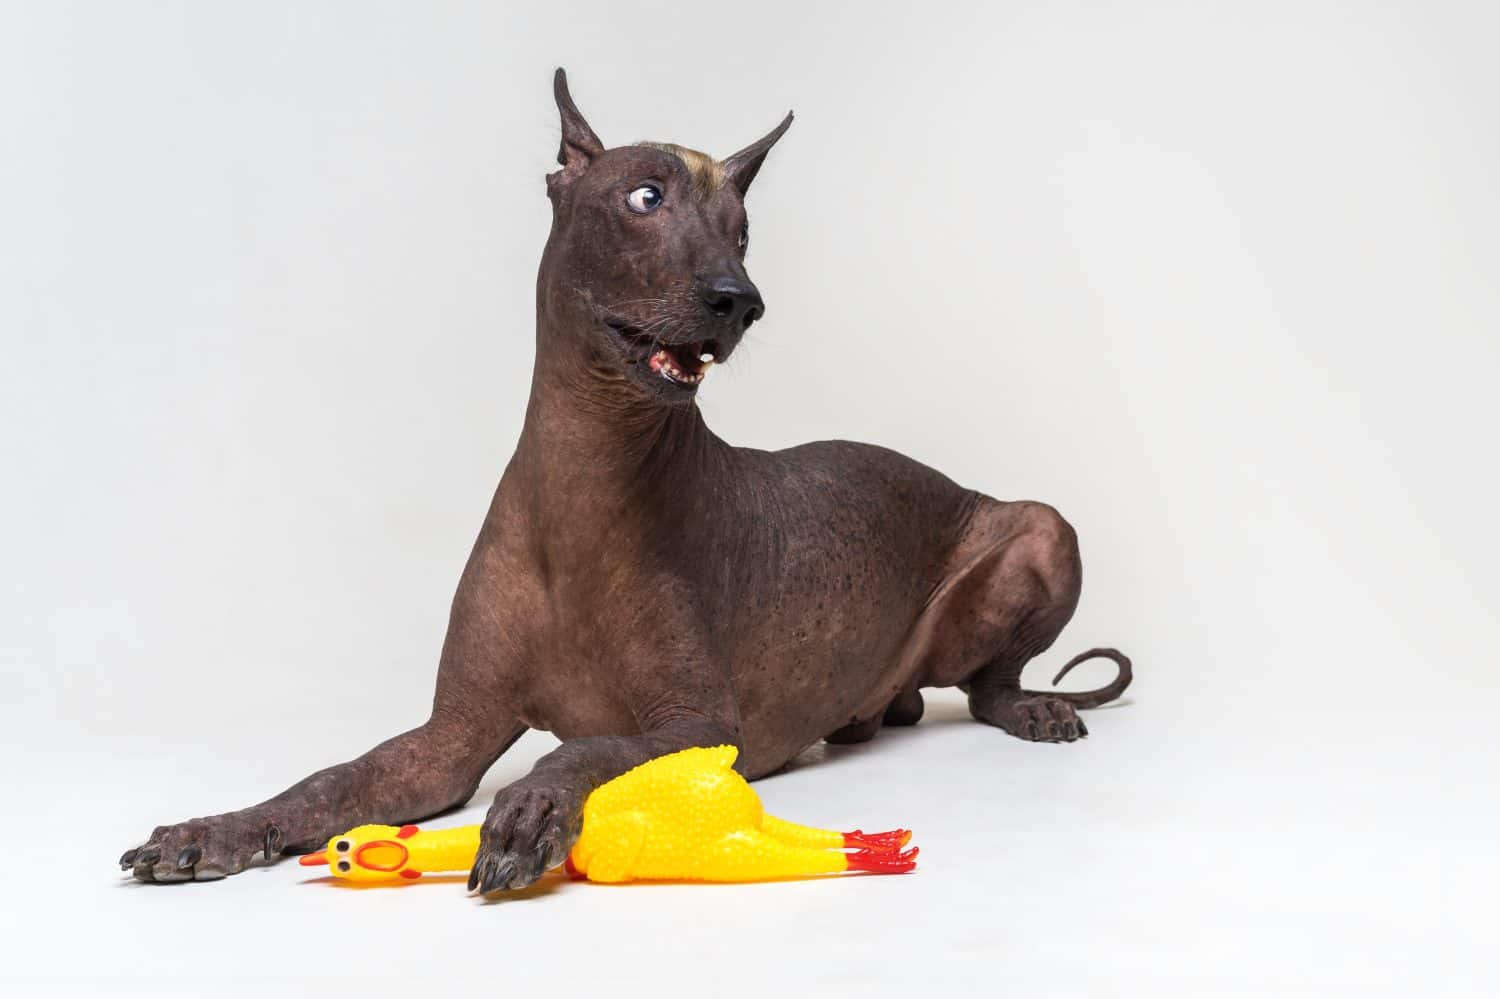 divertente cane messicano senza peli, xoloitzcuintli, giace su uno sfondo grigio, con in mano un giocattolo di gomma gialla di un gallo con una zampa.  Cambia il simbolo dell'anno animale